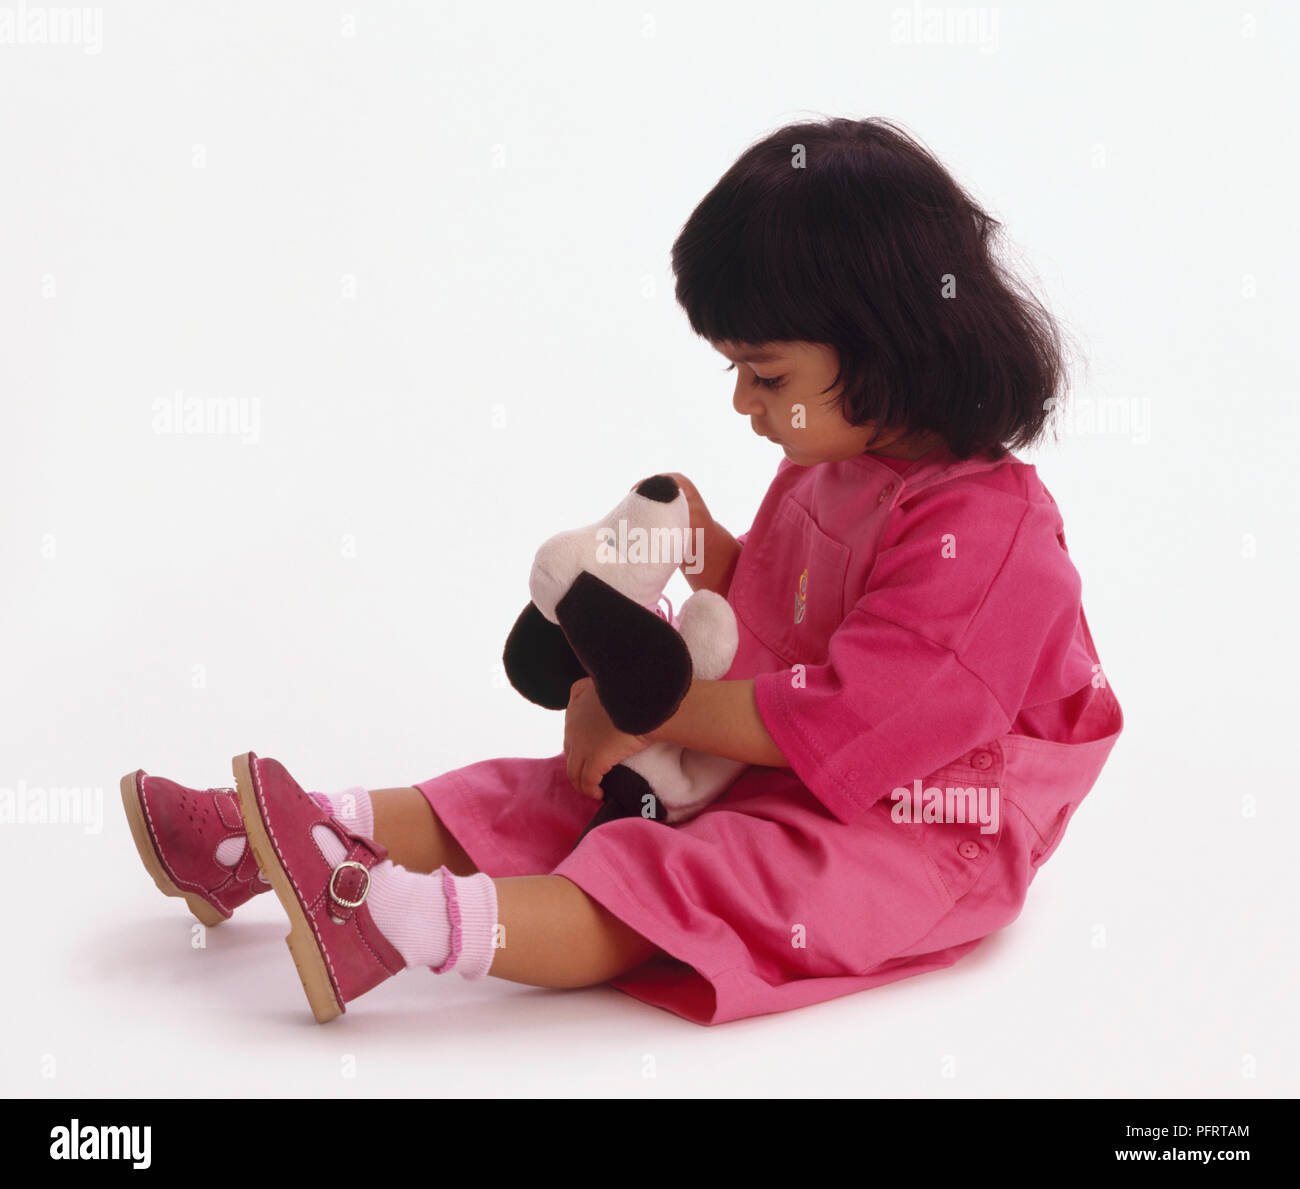 Il Toddler indossare top rosa, salopette da sandali e seduto sul pavimento tenendo in bianco e nero cane Foto Stock